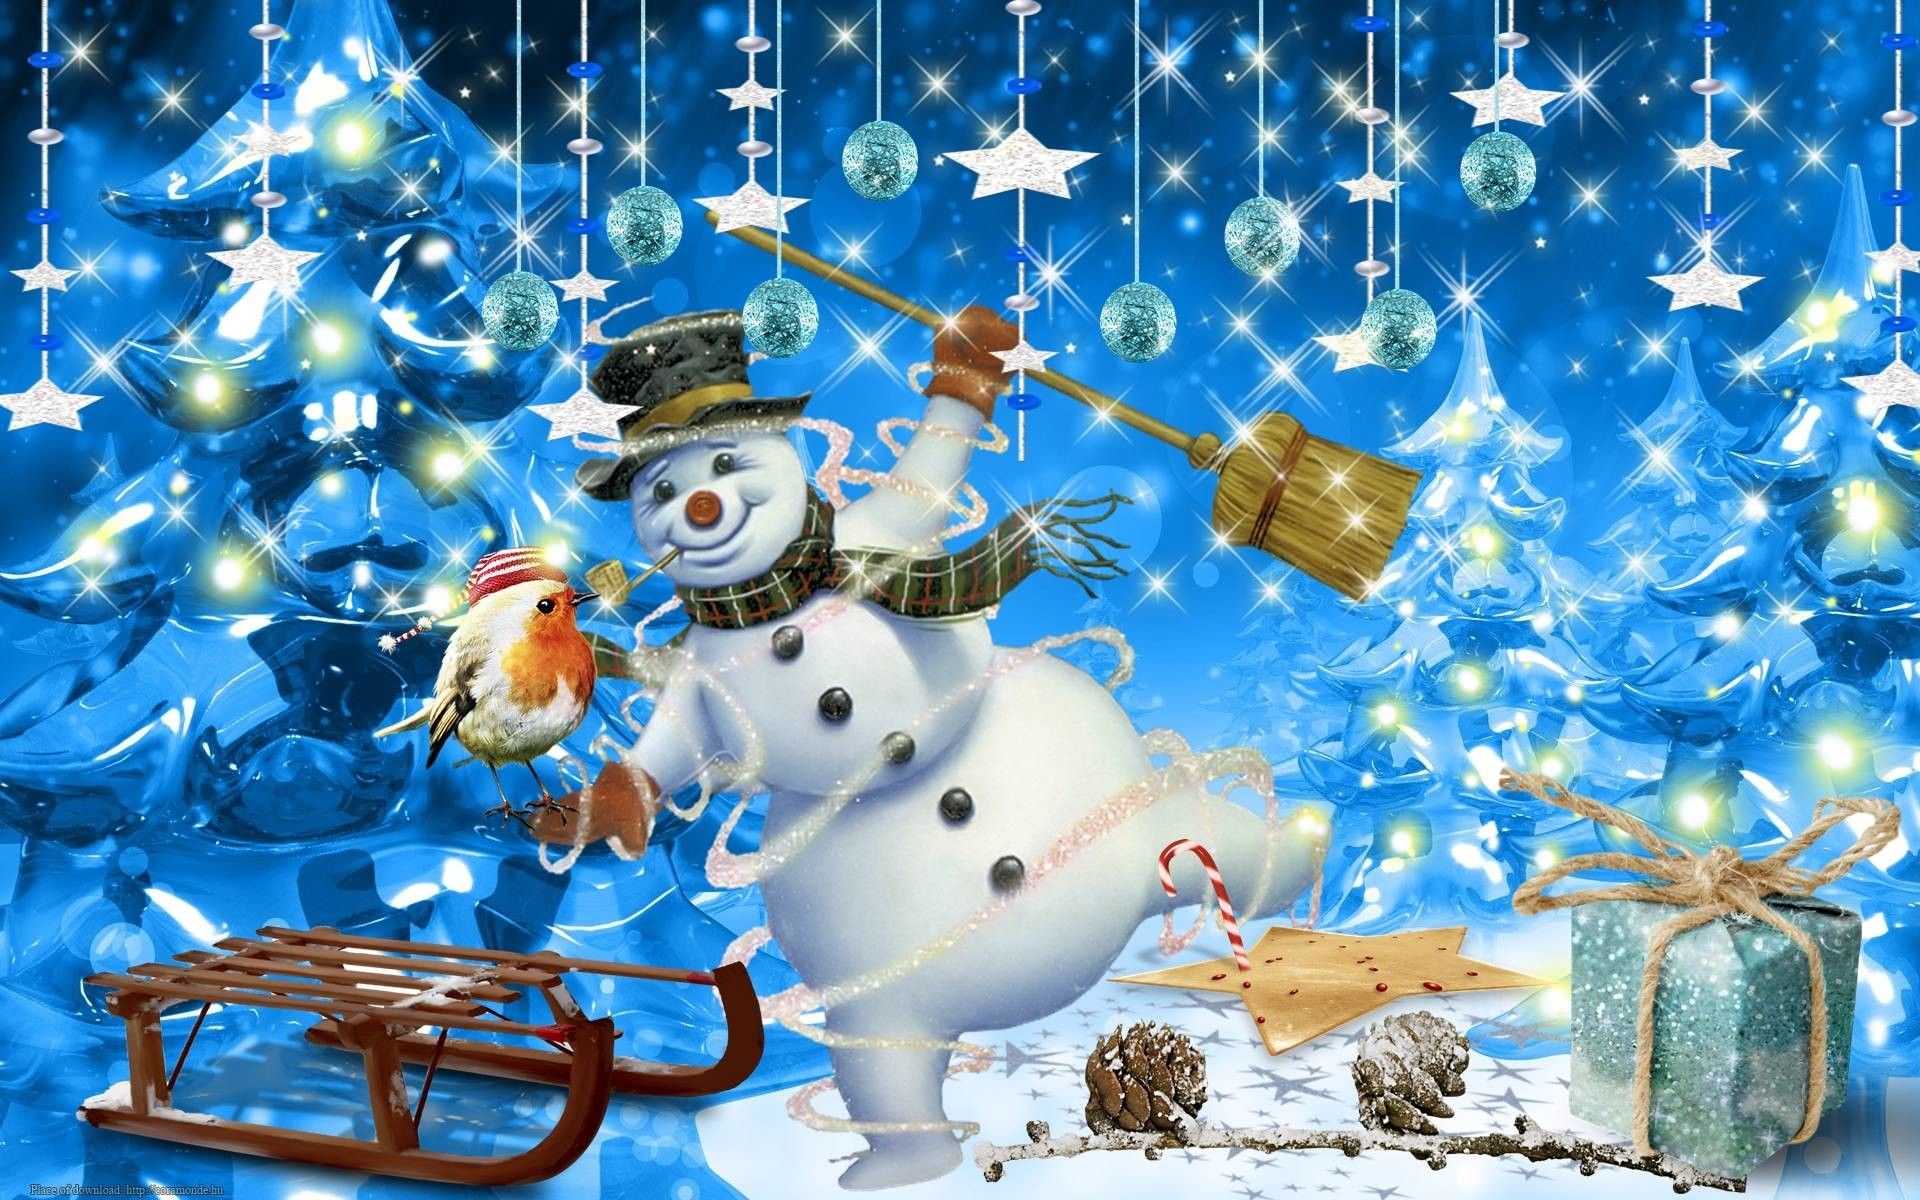 live snowman wallpaper 1.1 Free Download